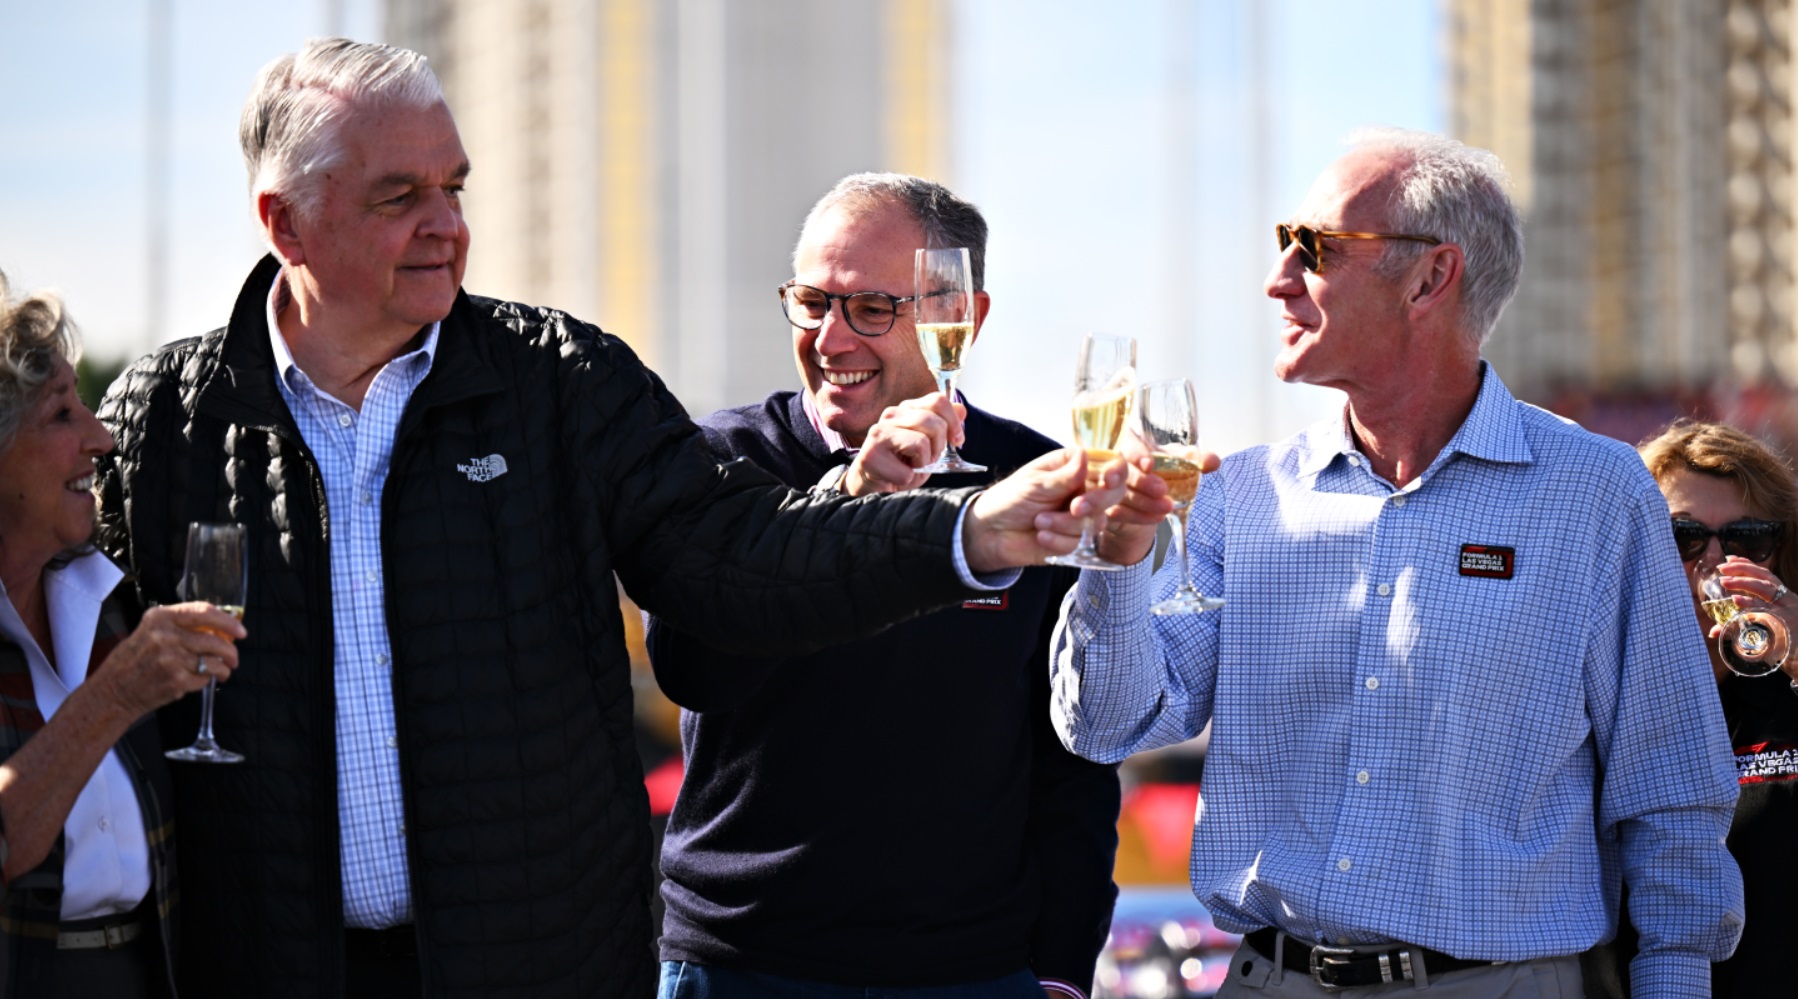 Władze sportu wznoszą toast za zdrowie wyścigu F1 na rok przed jego organizacją (fot. Powers Imagery/F1 Las Vegas GP).